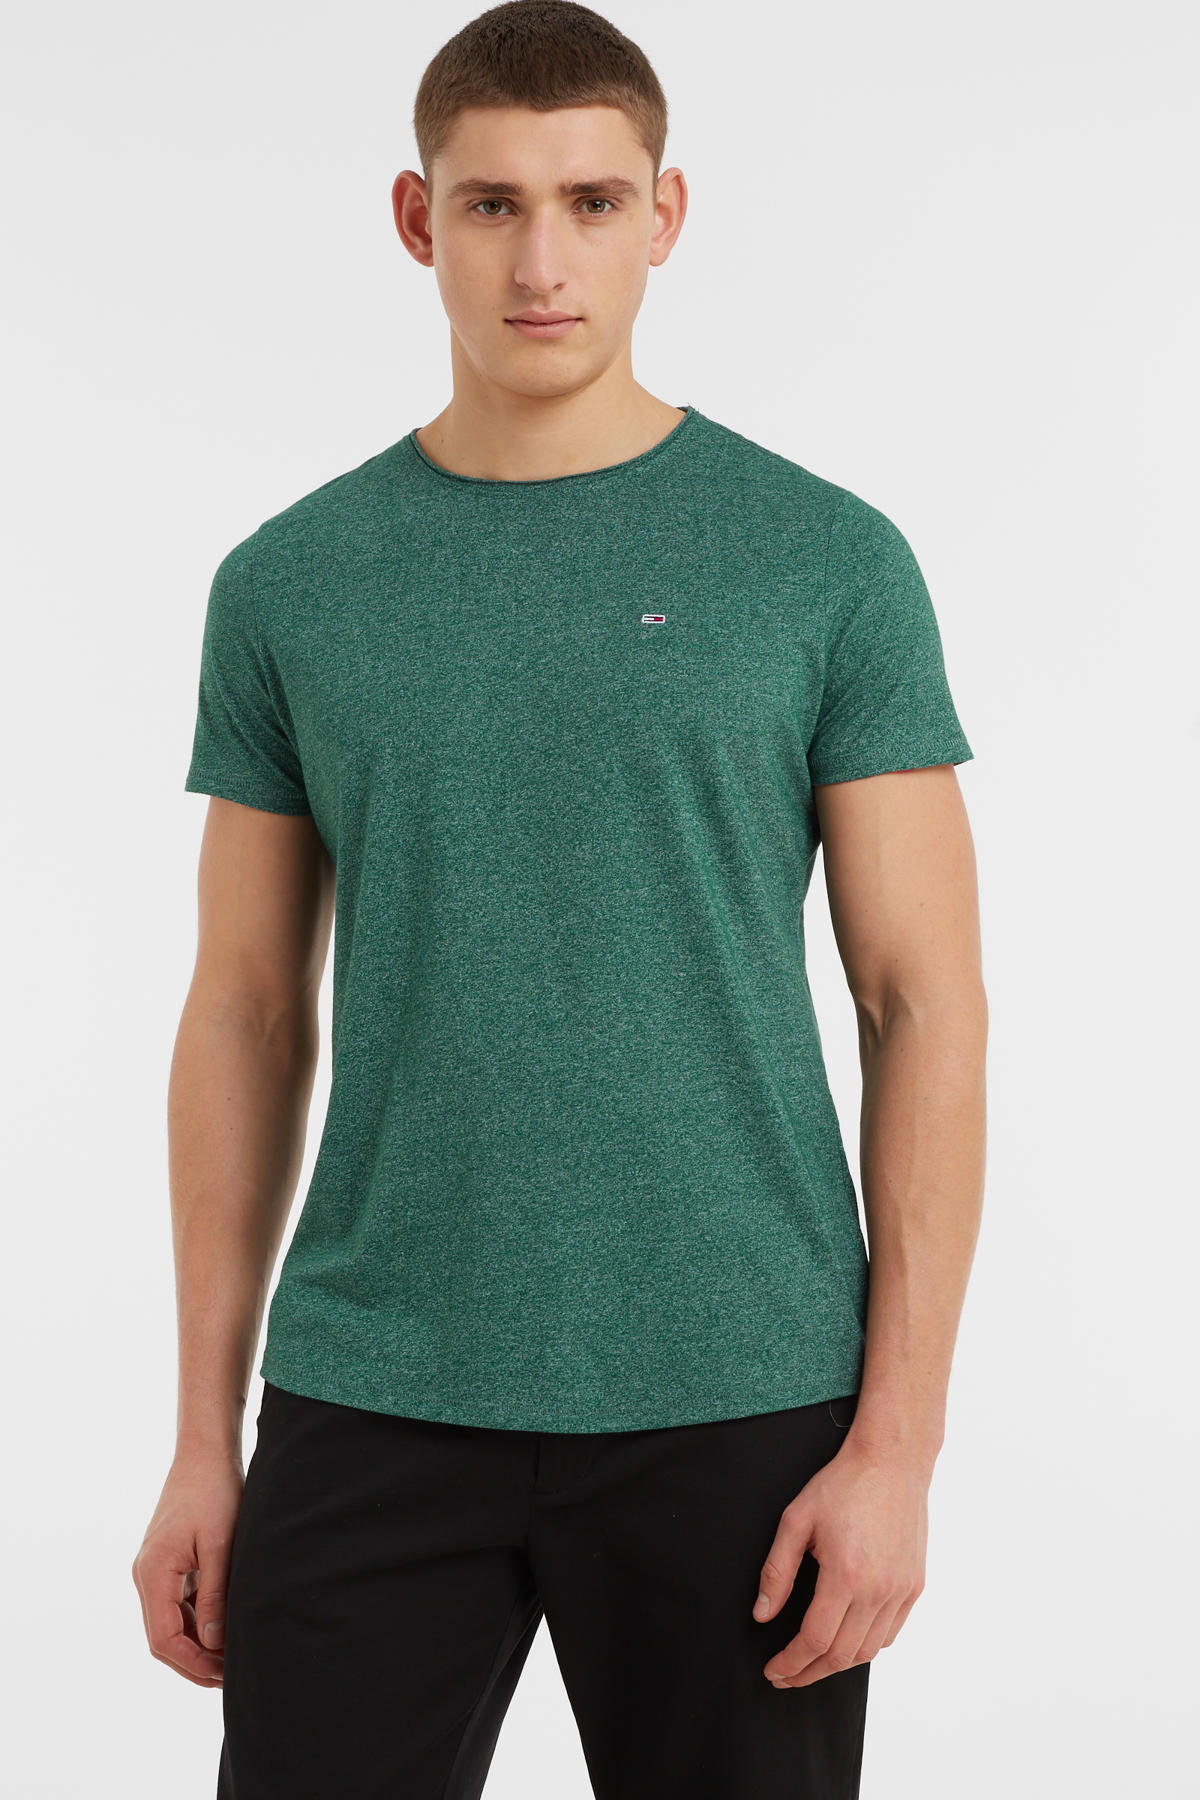 Praten tegen Refrein huren Tommy Jeans gemêleerd slim fit T-shirt Jaspe met biologisch katoen turf  green | wehkamp